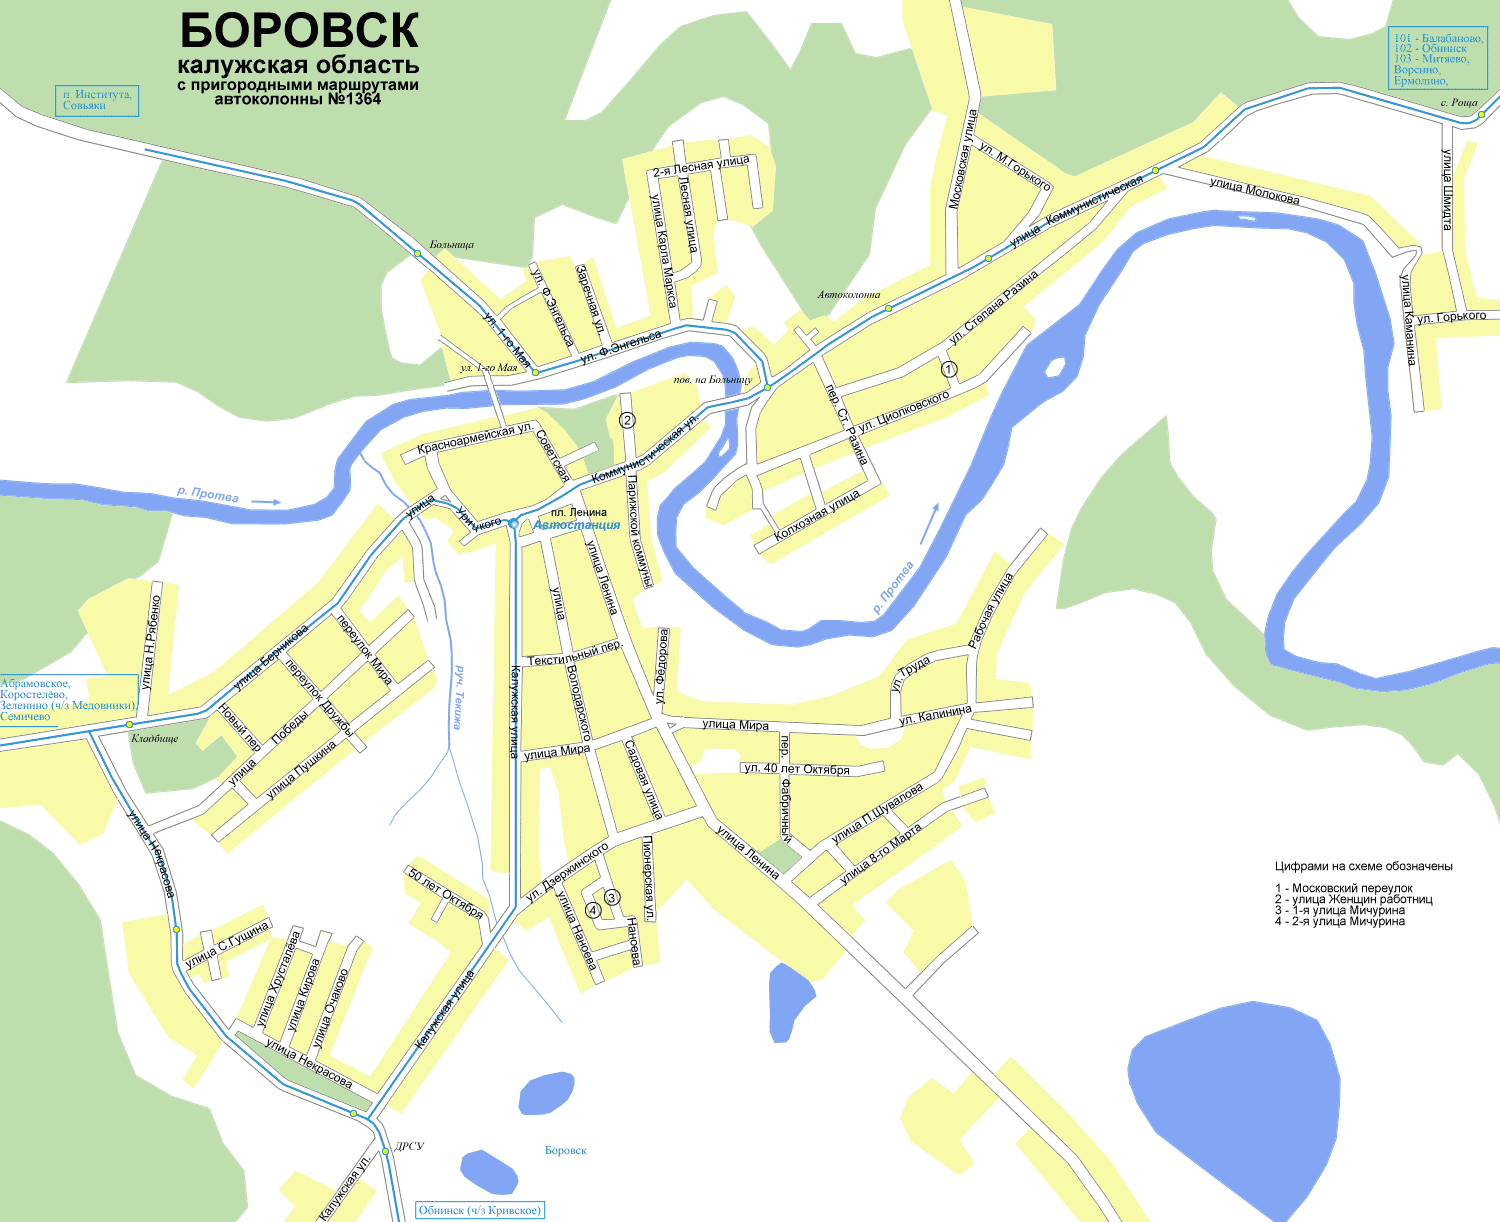 Подробная карта Боровска